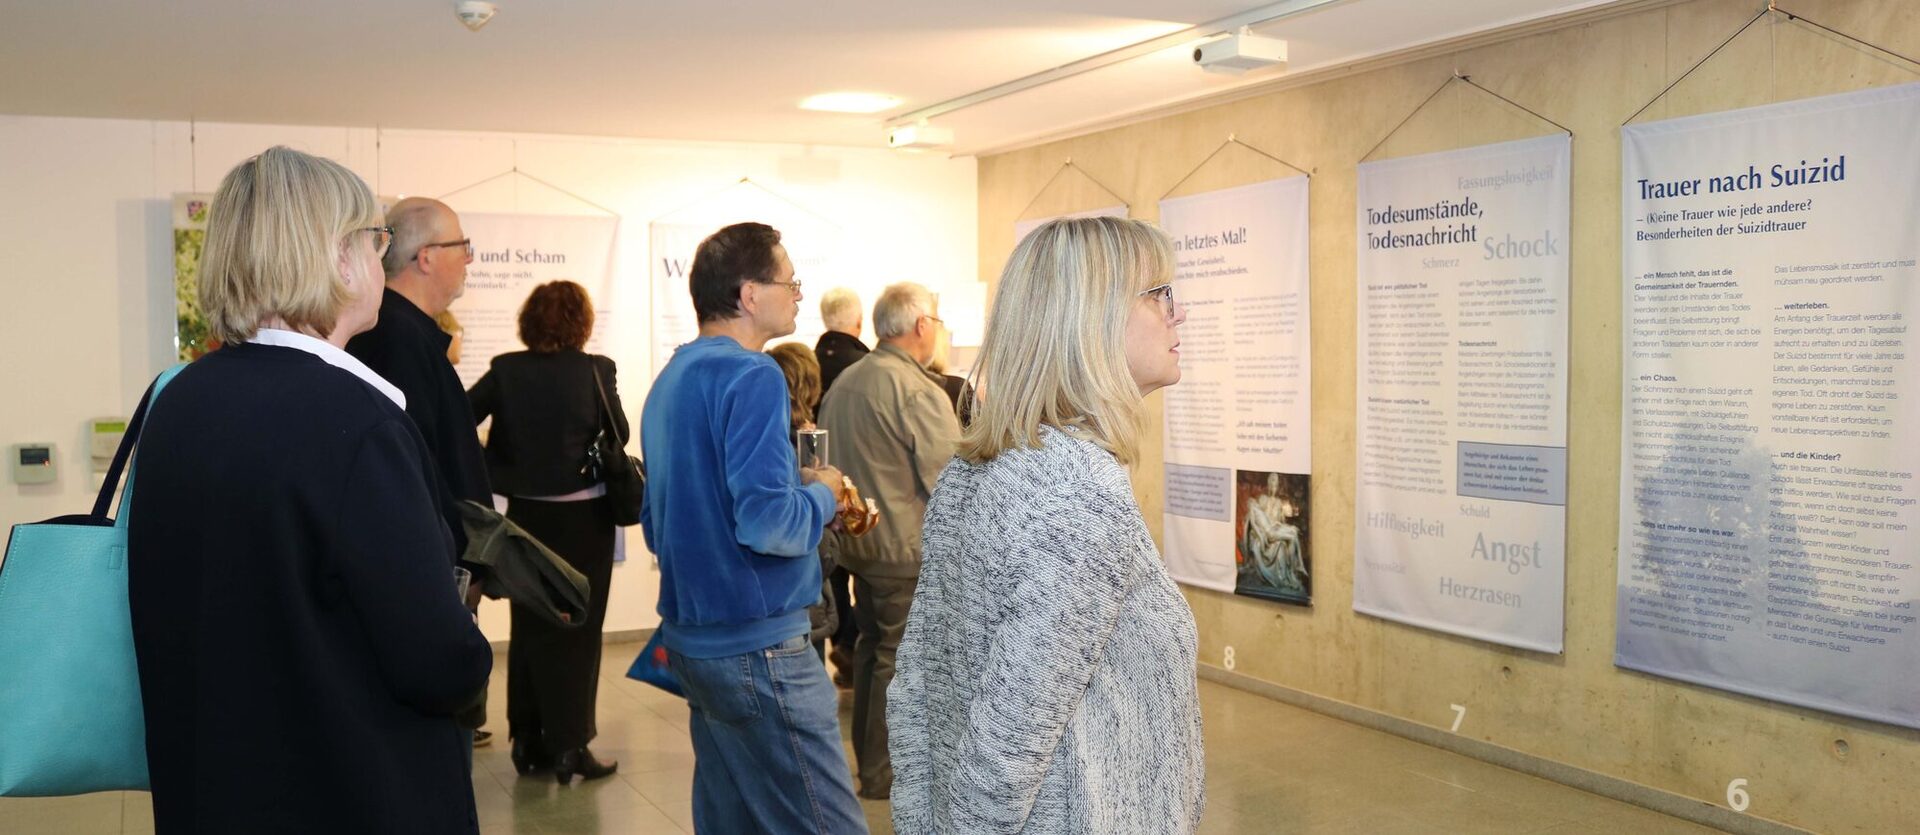 Interessierte Besucher bei der Ausstellungseröffnung. 23 Tafeln informieren über Daten und Fakten zum Thema Suizid.